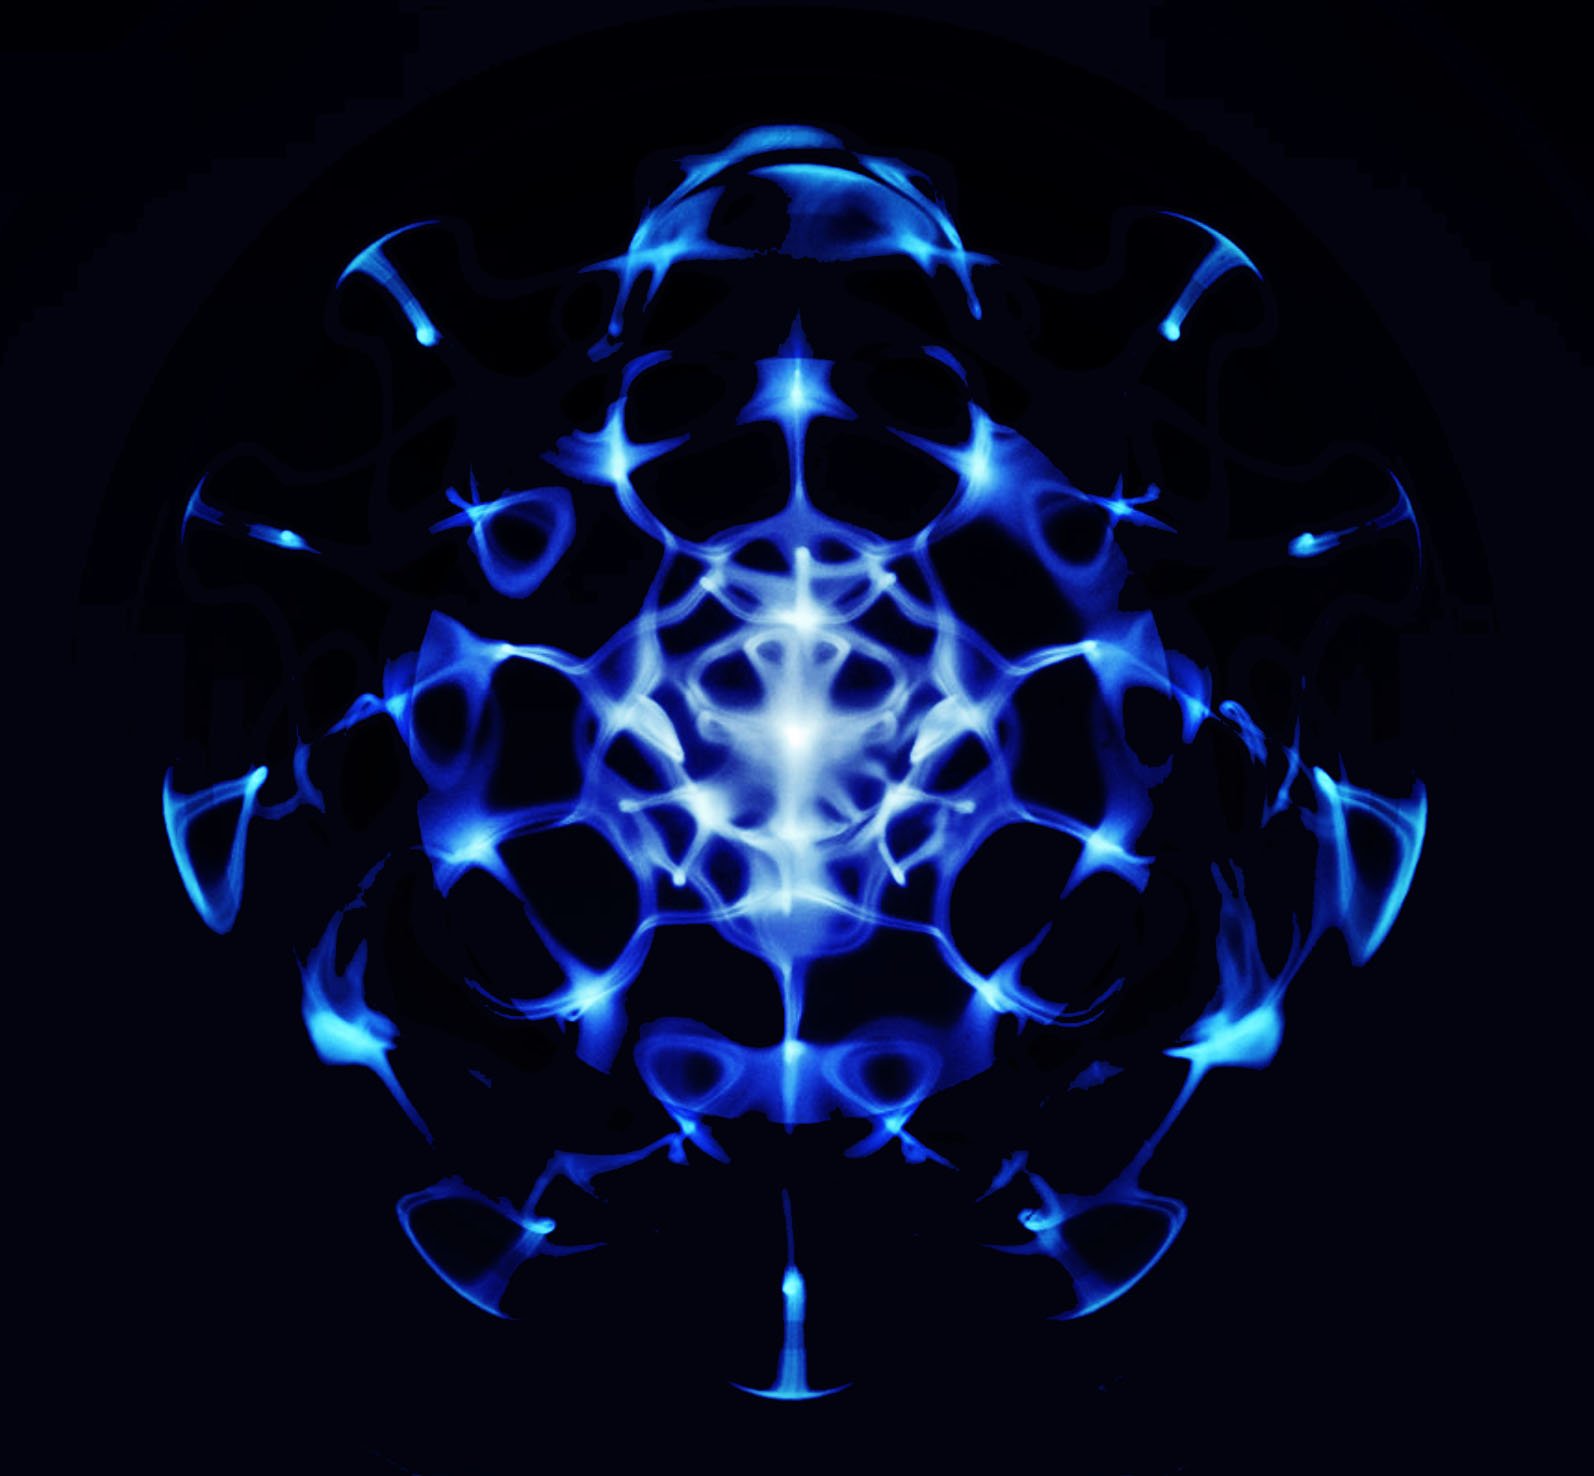 Vymatics